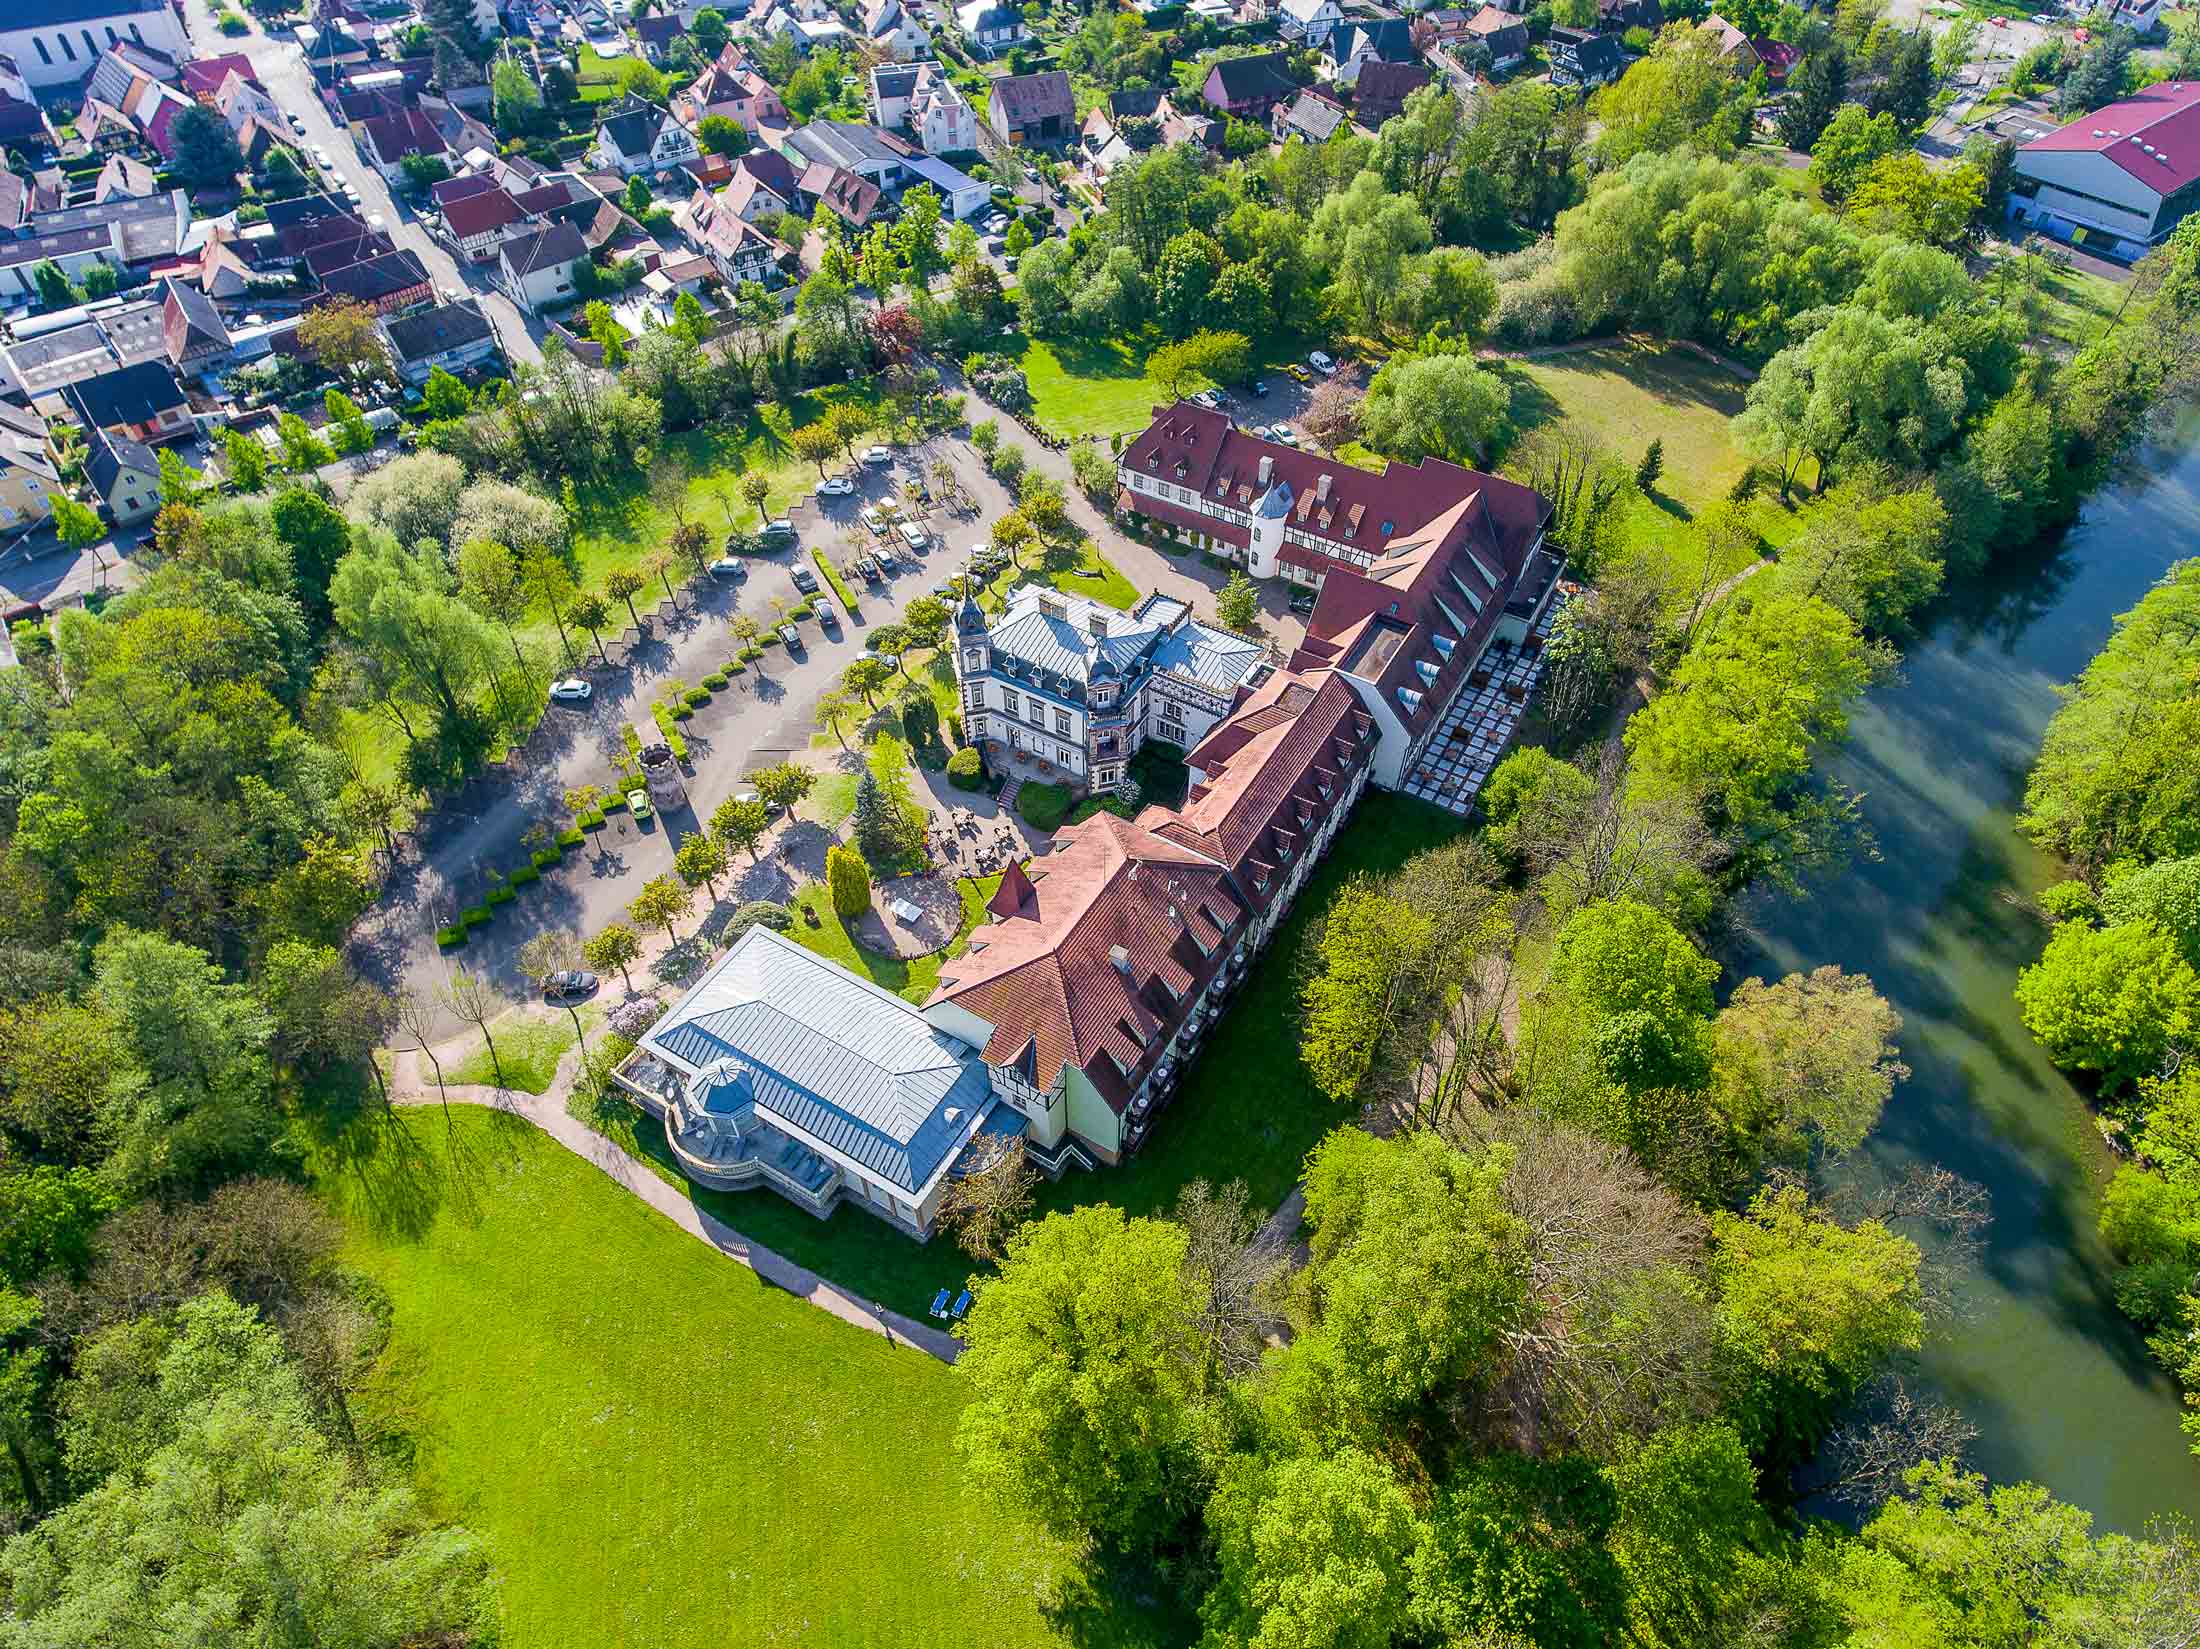 Prise de vue d'architecture réalisée par drone du château de l'Ile à Ostwald